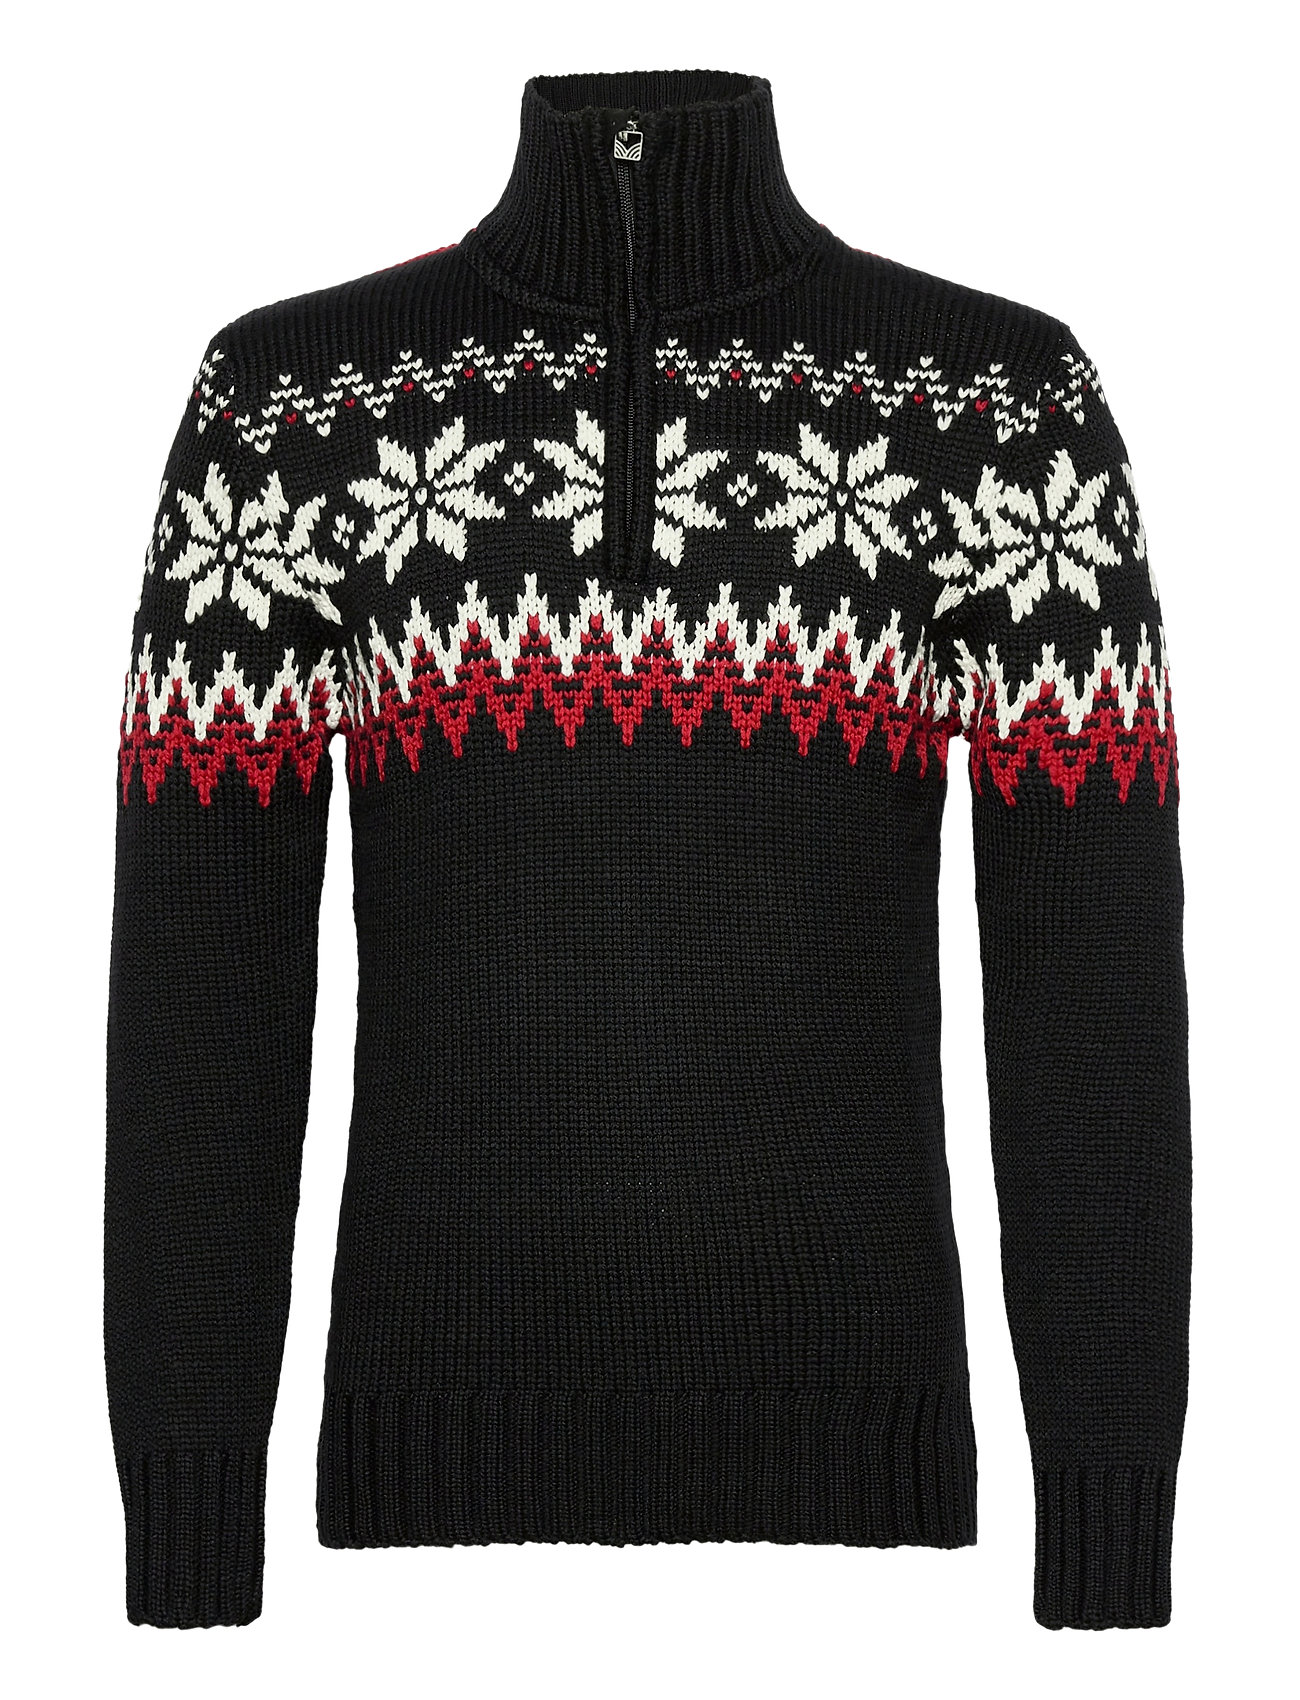 Myking Masc Sweater Knitwear Half Zip Pullover Svart Dale Of Norway